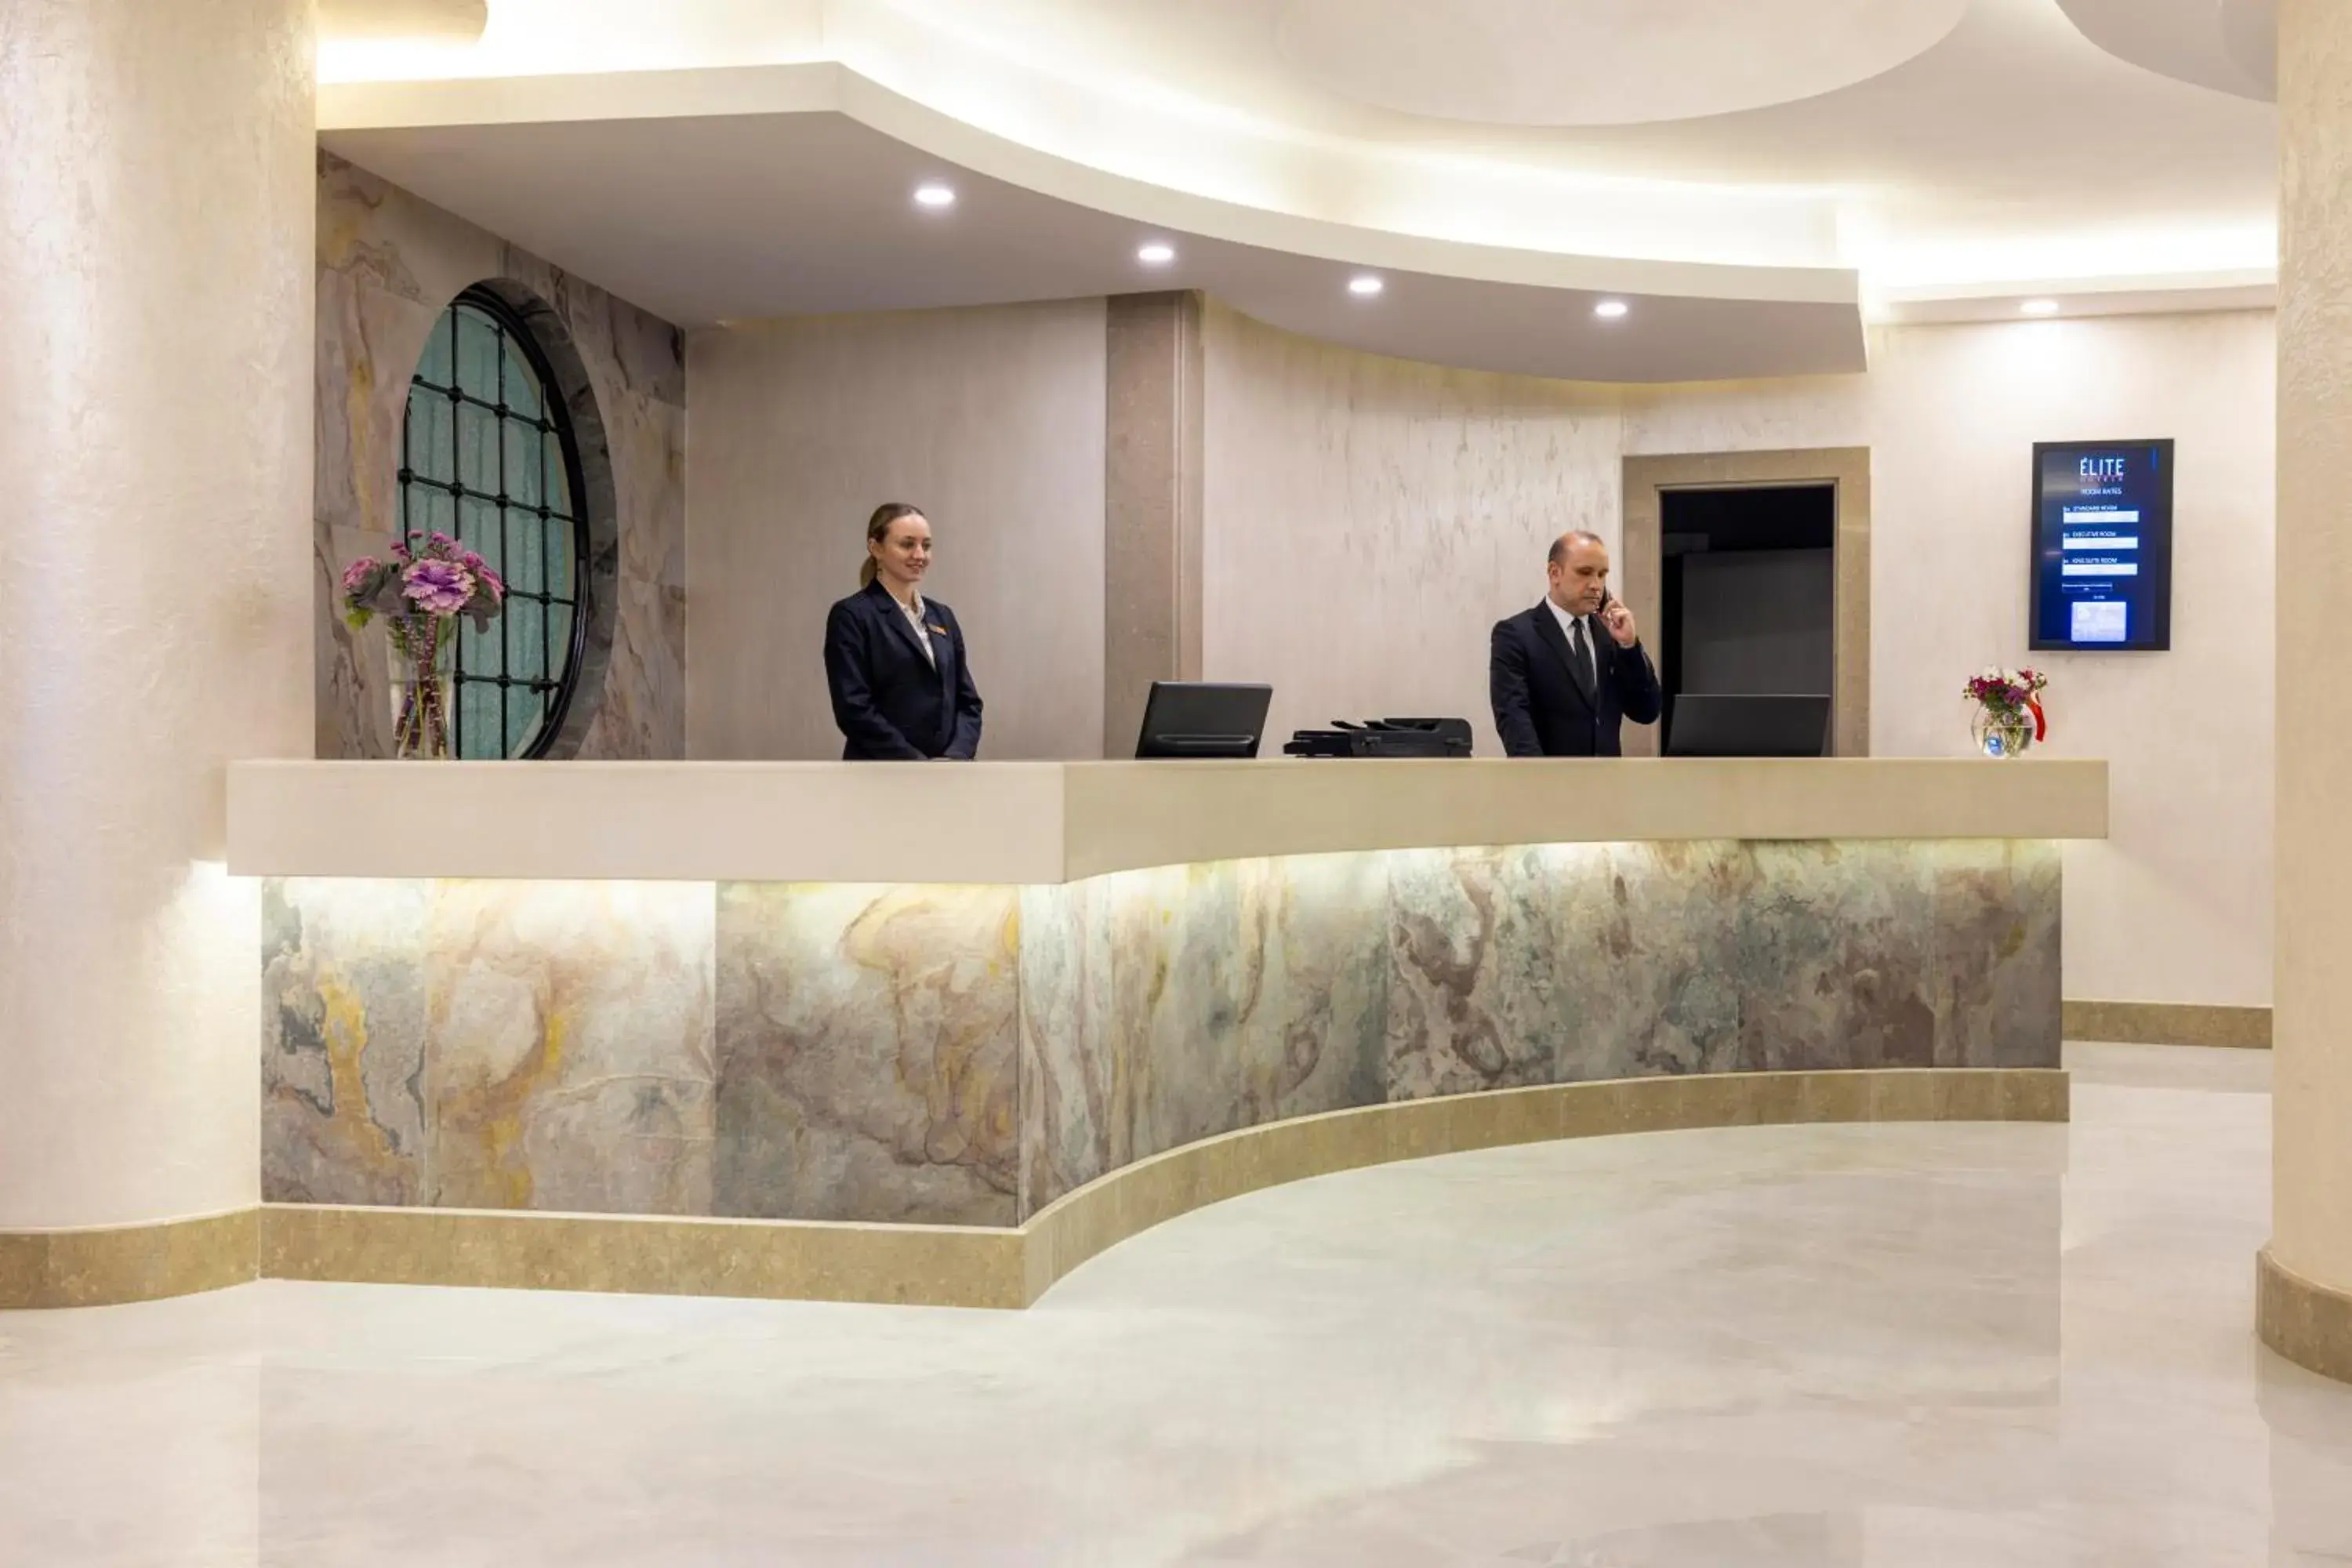 Lobby or reception, Lobby/Reception in Elite Hotel Dragos